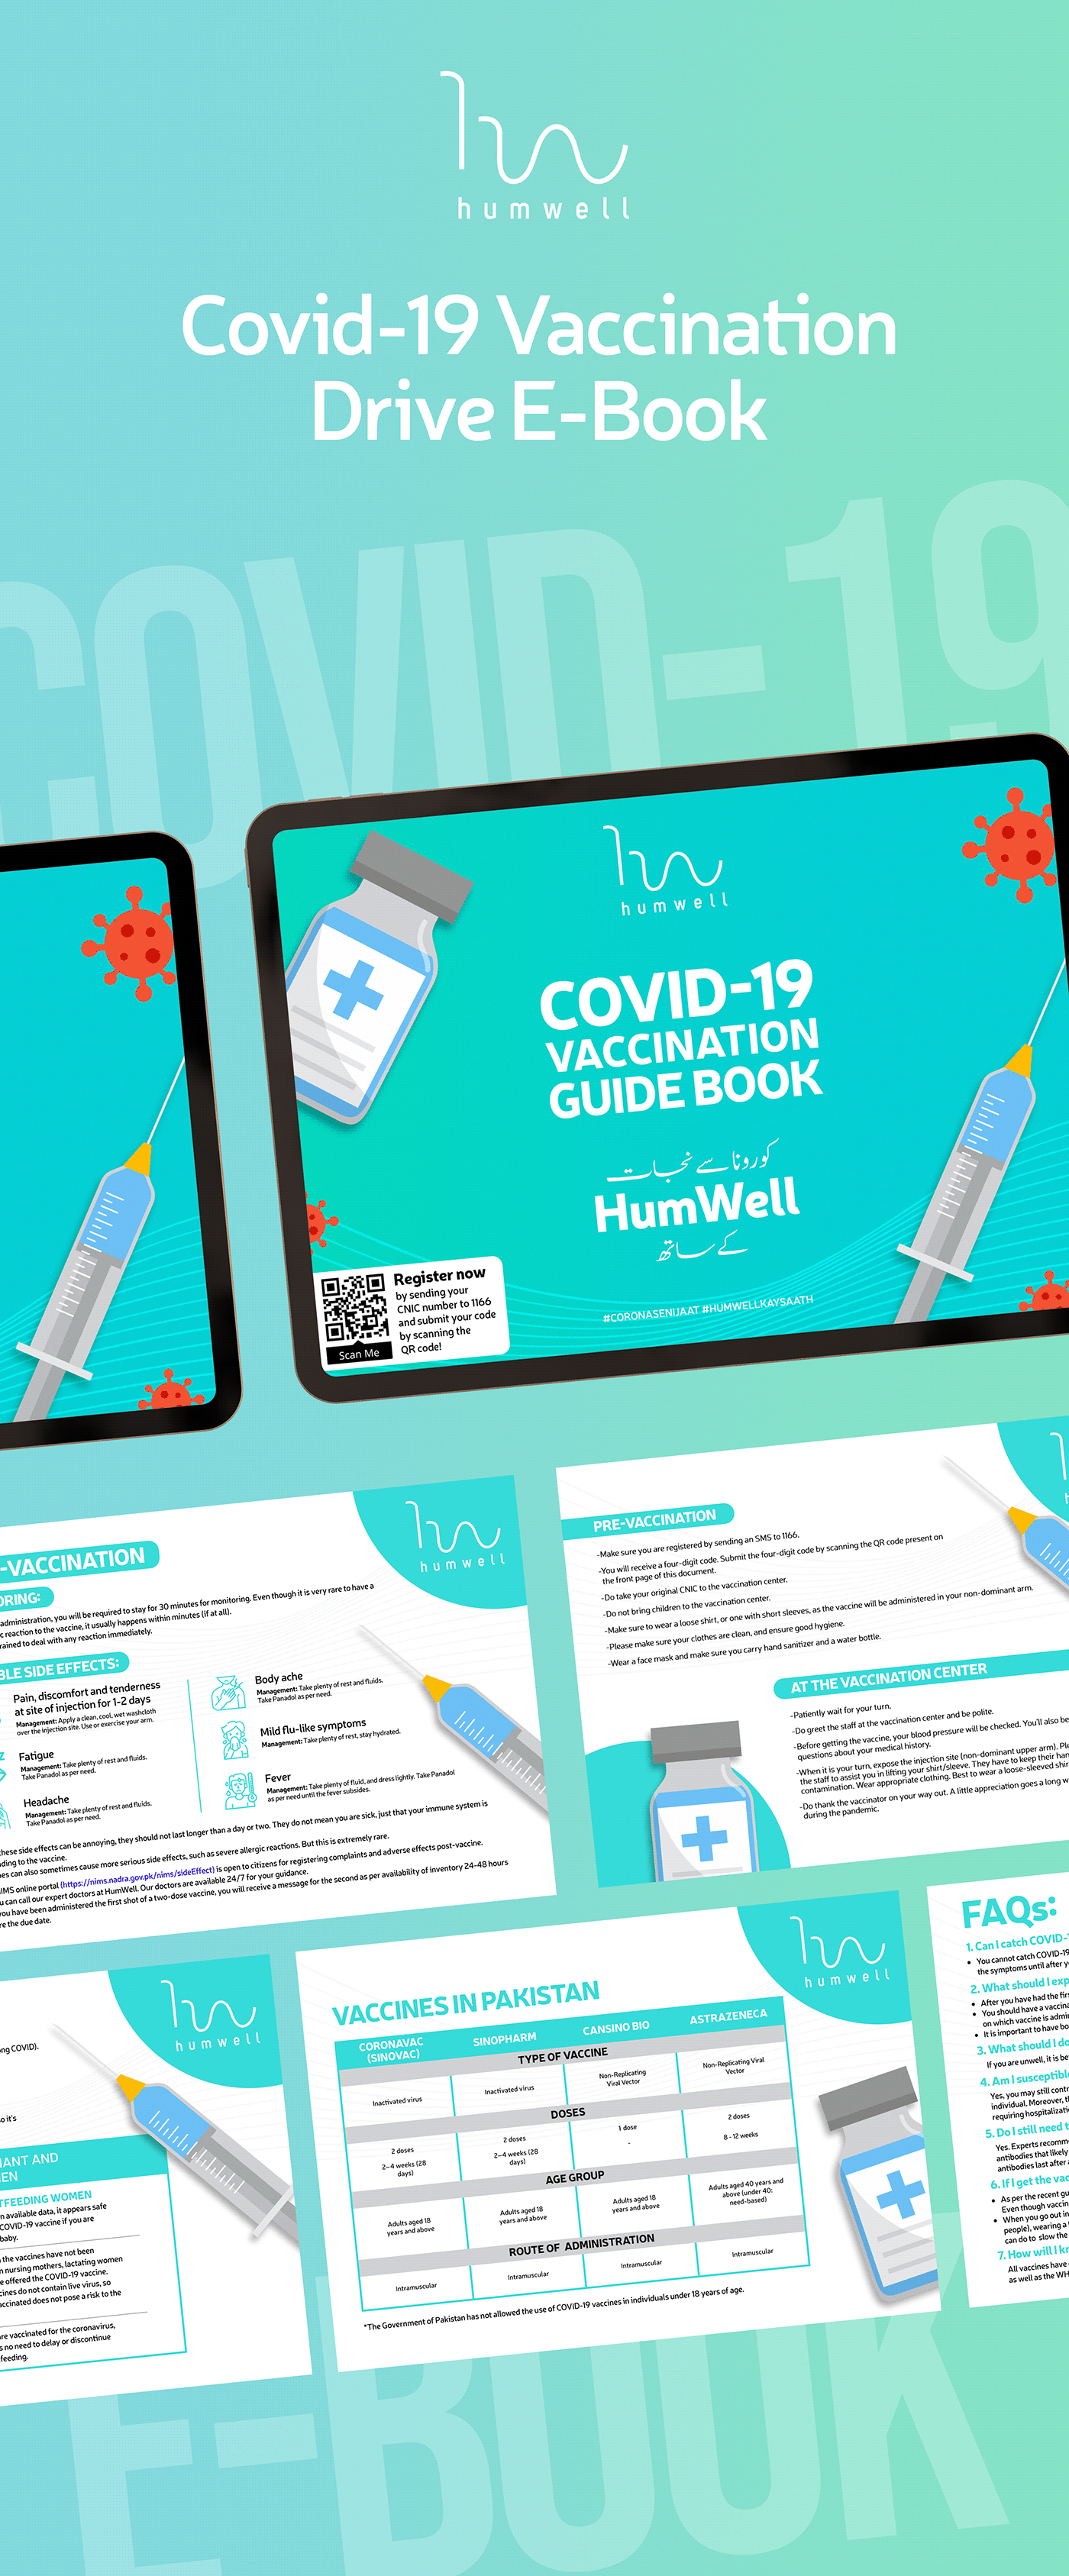 CoronaVaccination COVid COVID-19 e-book Guide humwell vaccination vaccine COVID19 Behance